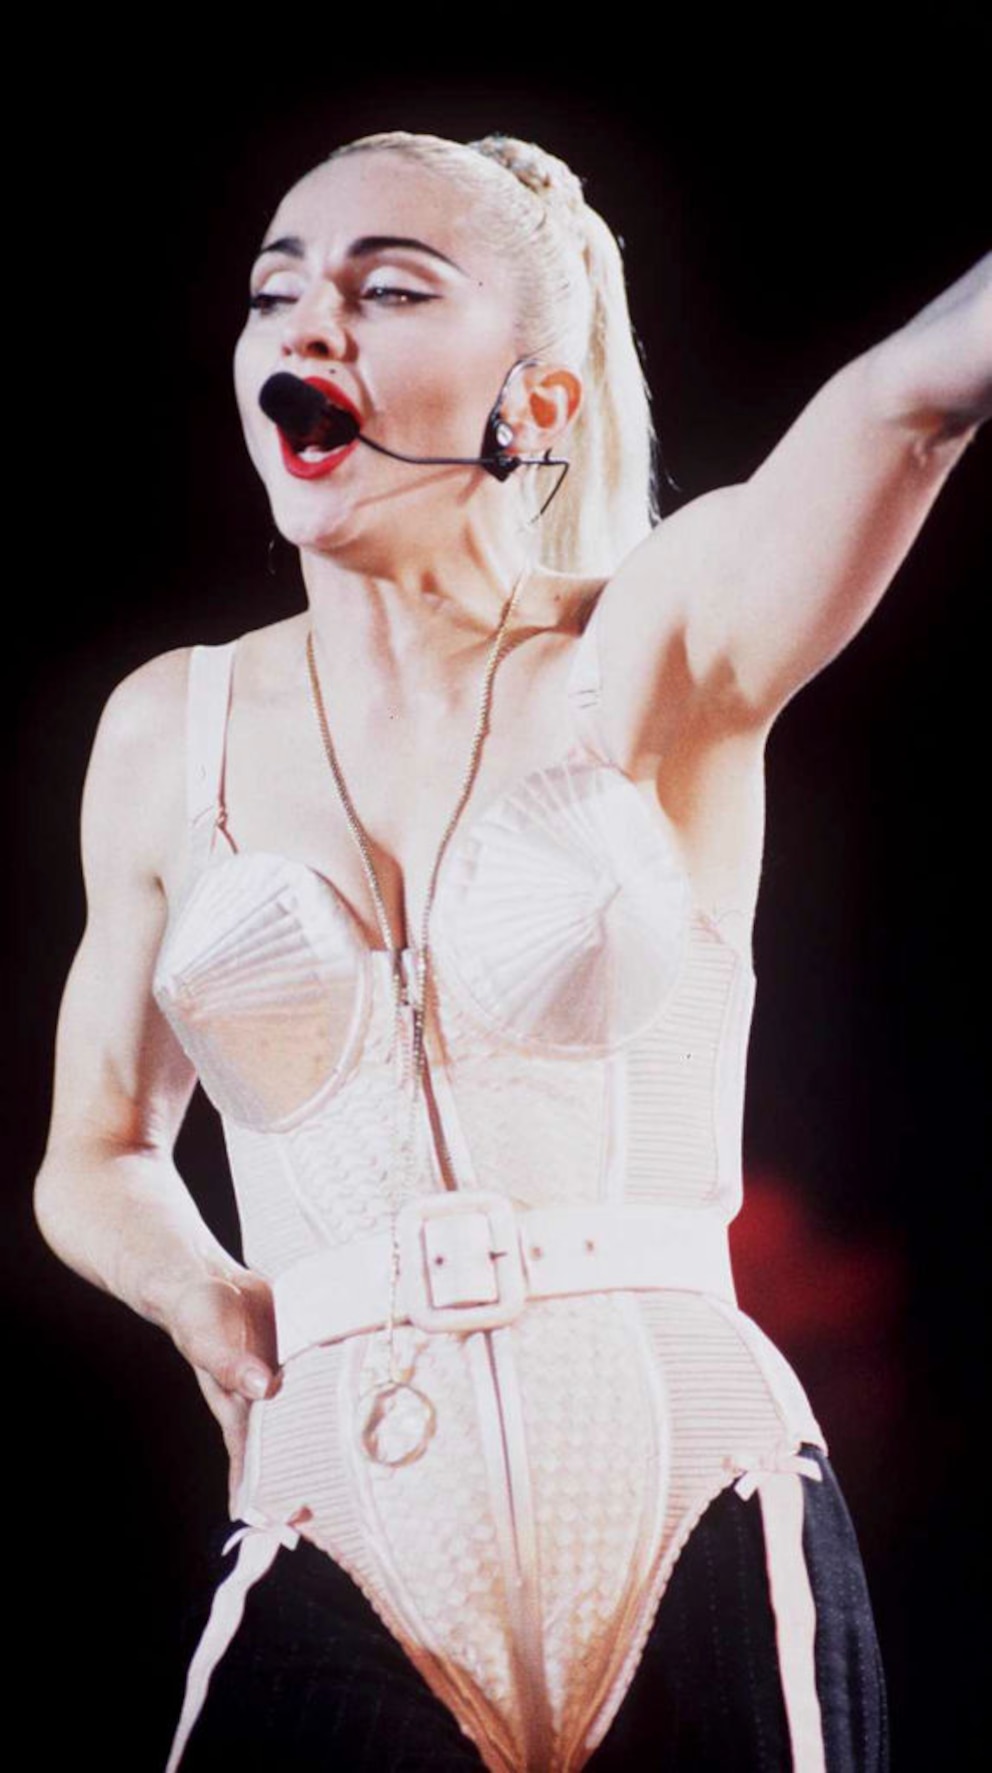 Sängerin Madonna in ihrem ikonischen Outfit